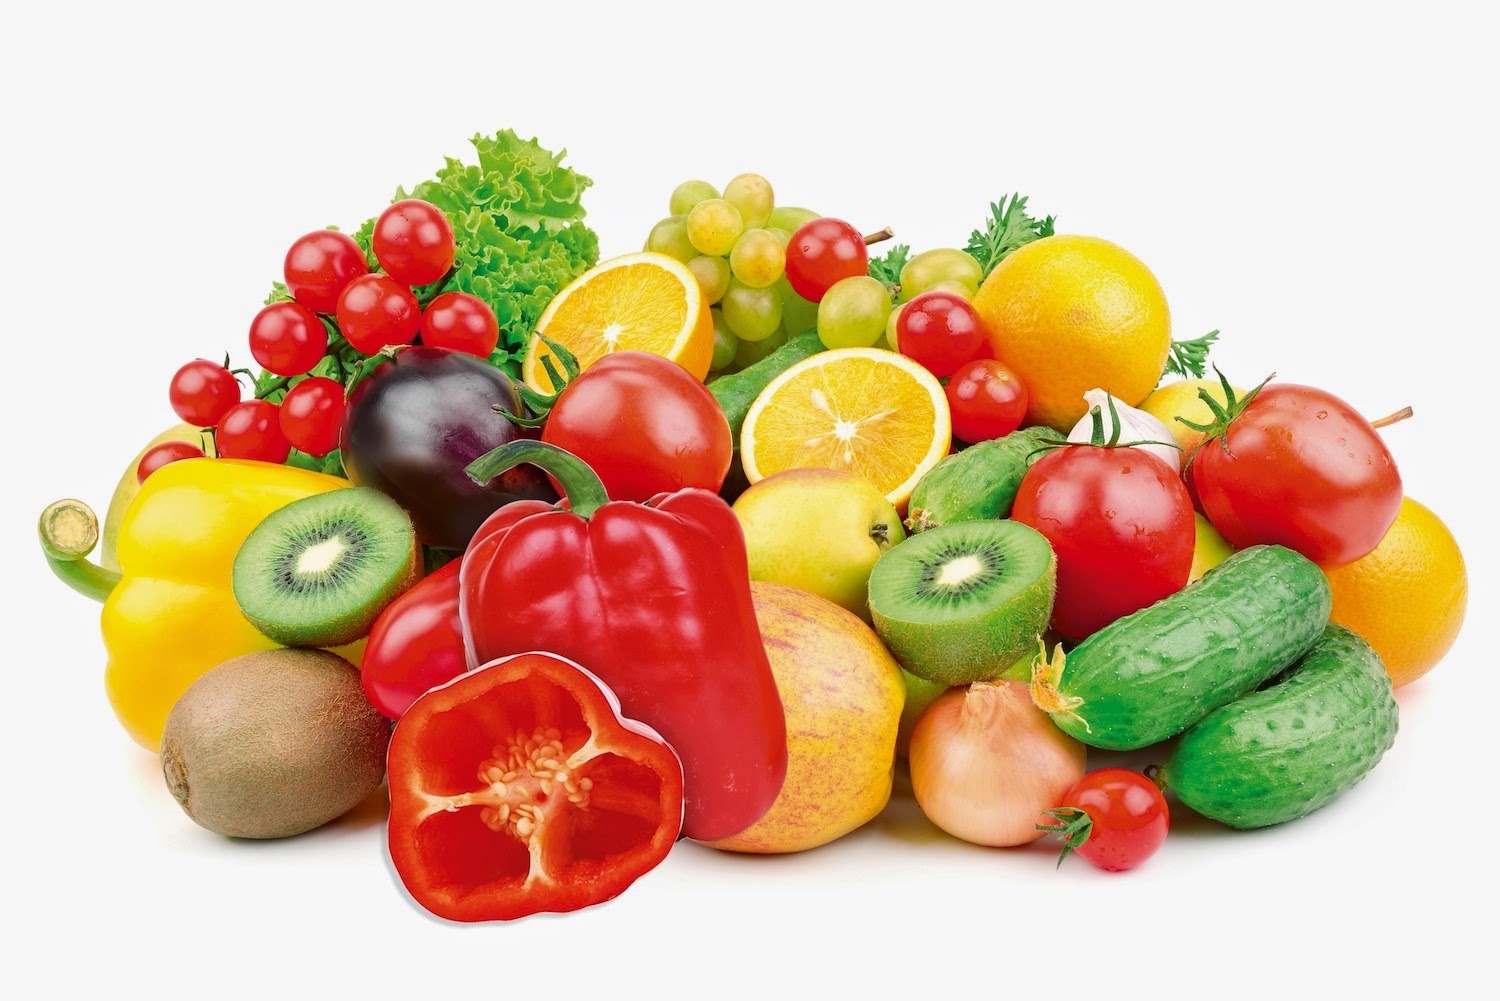 najzdrowsze warzywa i owoce